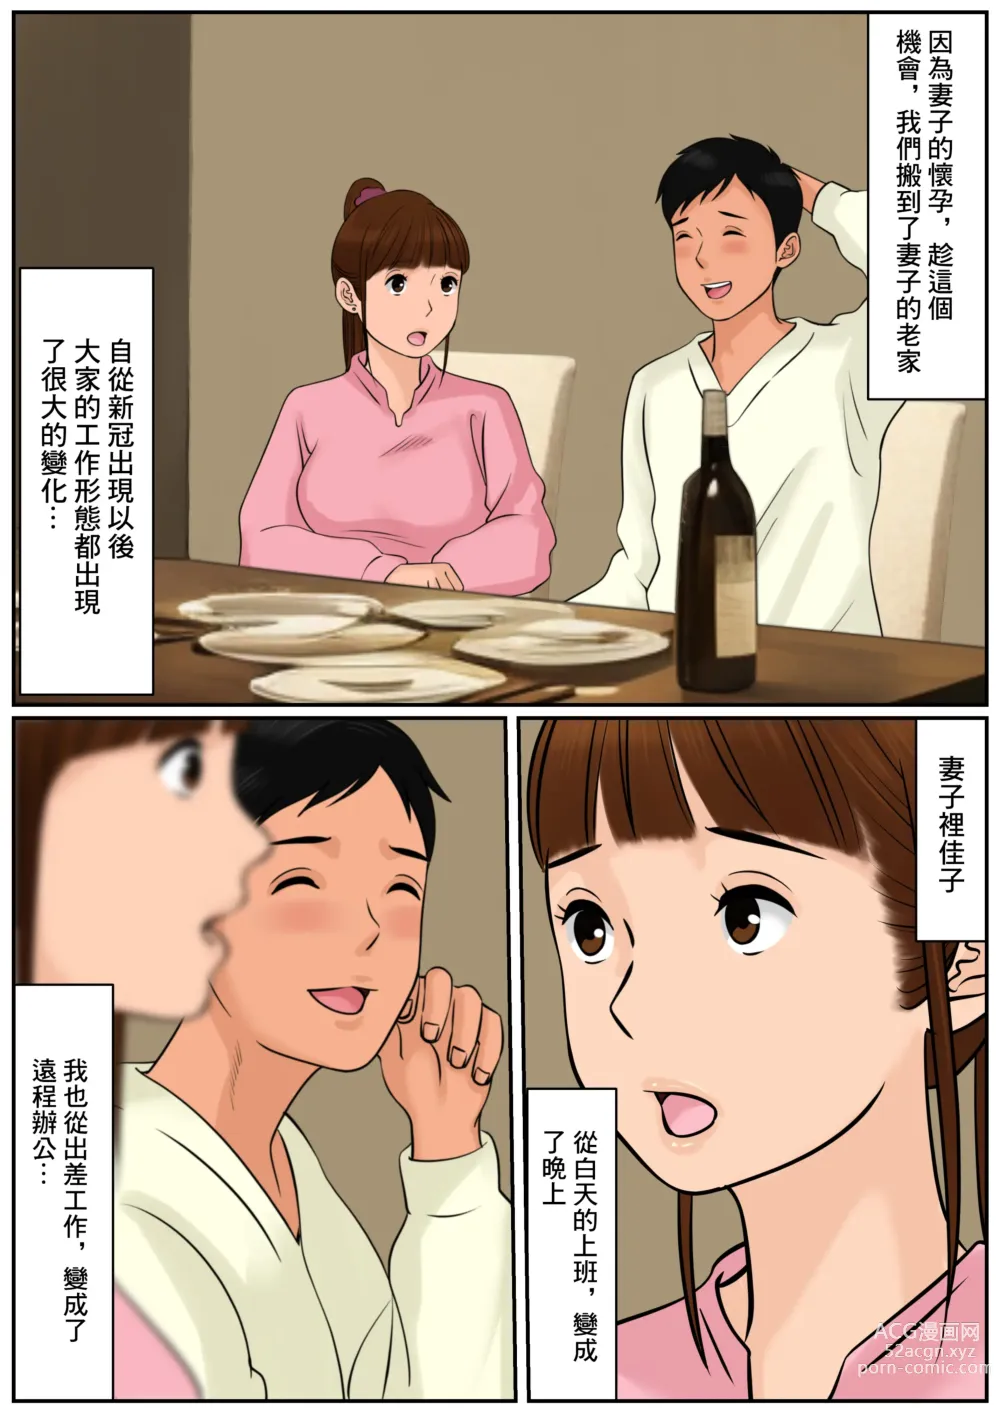 Page 6 of doujinshi 難道你是嫌棄我這個媽媽嗎?